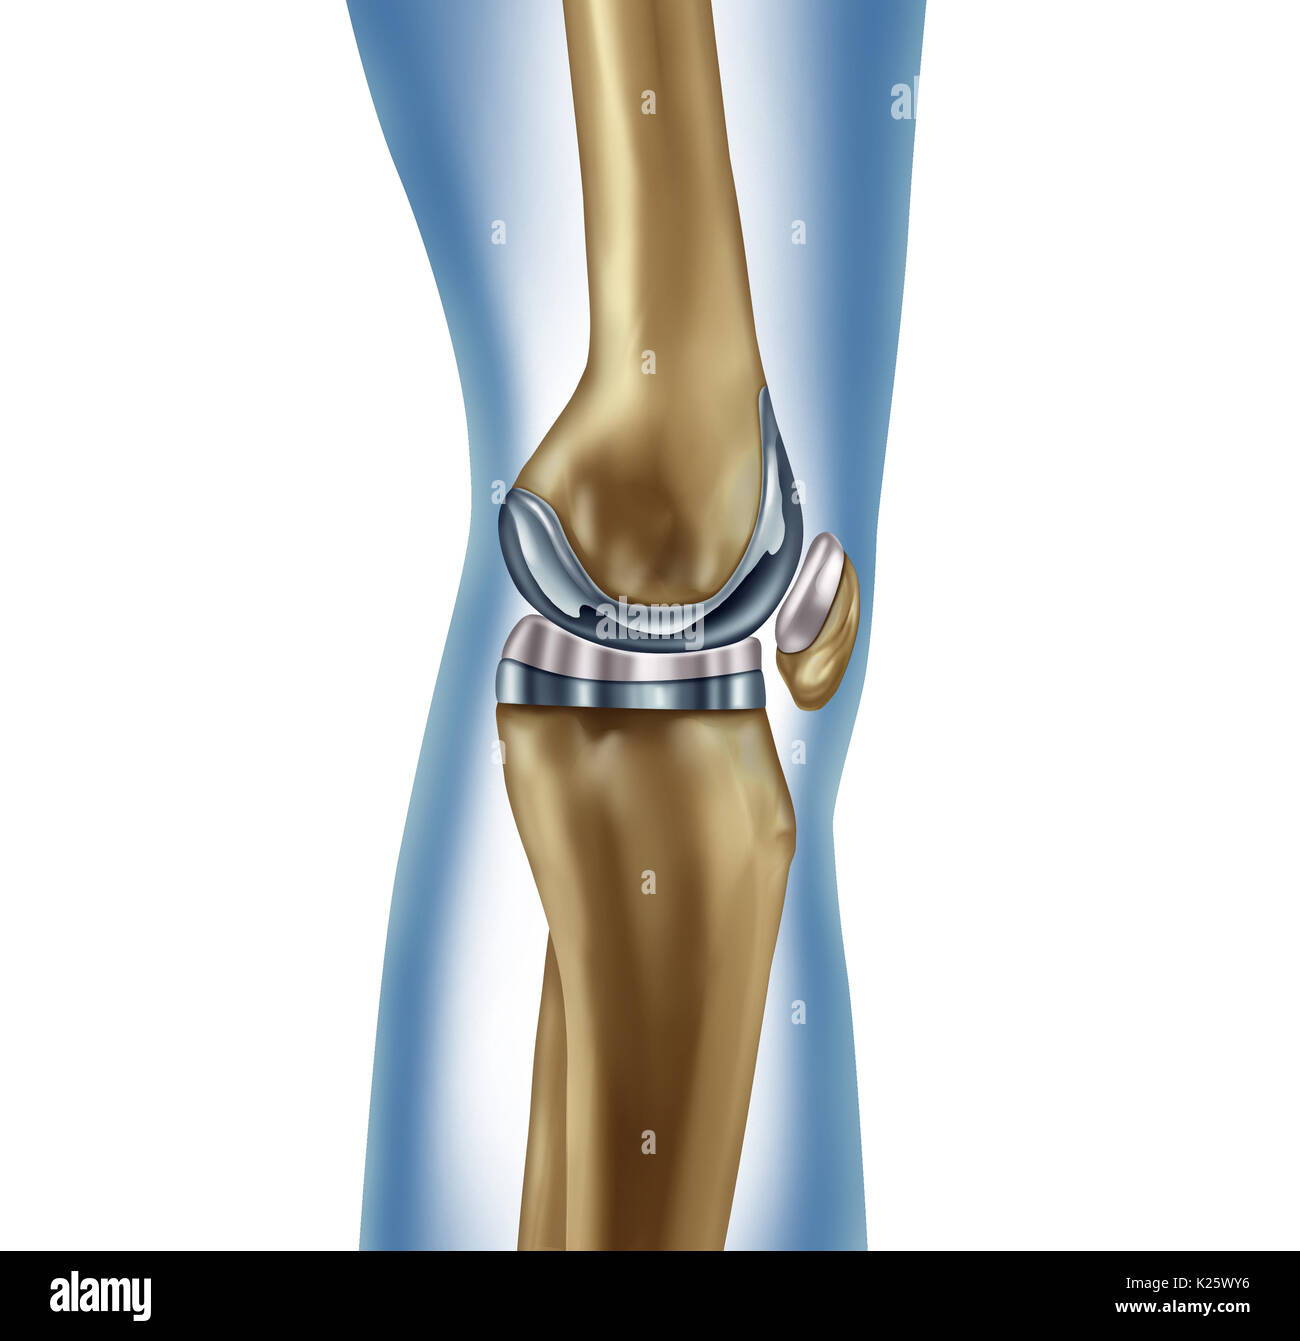 Sostituzione impianto di ginocchio concetto medico come una gamba umana anatomia dopo una chirurgia protesica come un apparato muscoloscheletrico malattia simbolo di trattamento. Foto Stock